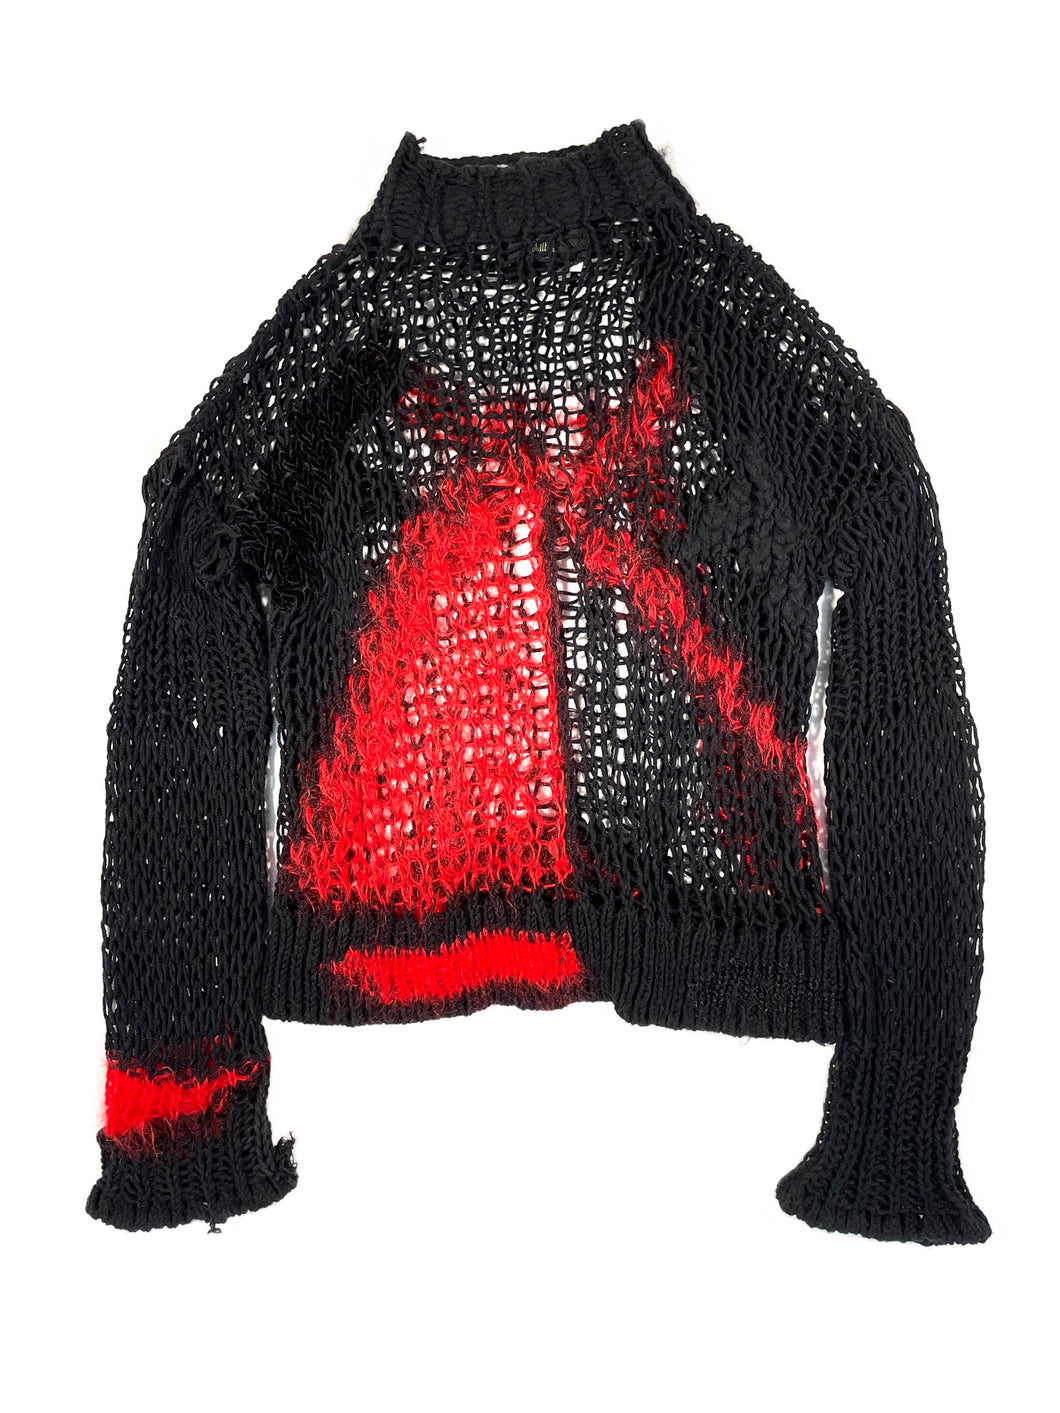 FW2007 Jean Paul Gaultier mohair knit sweater